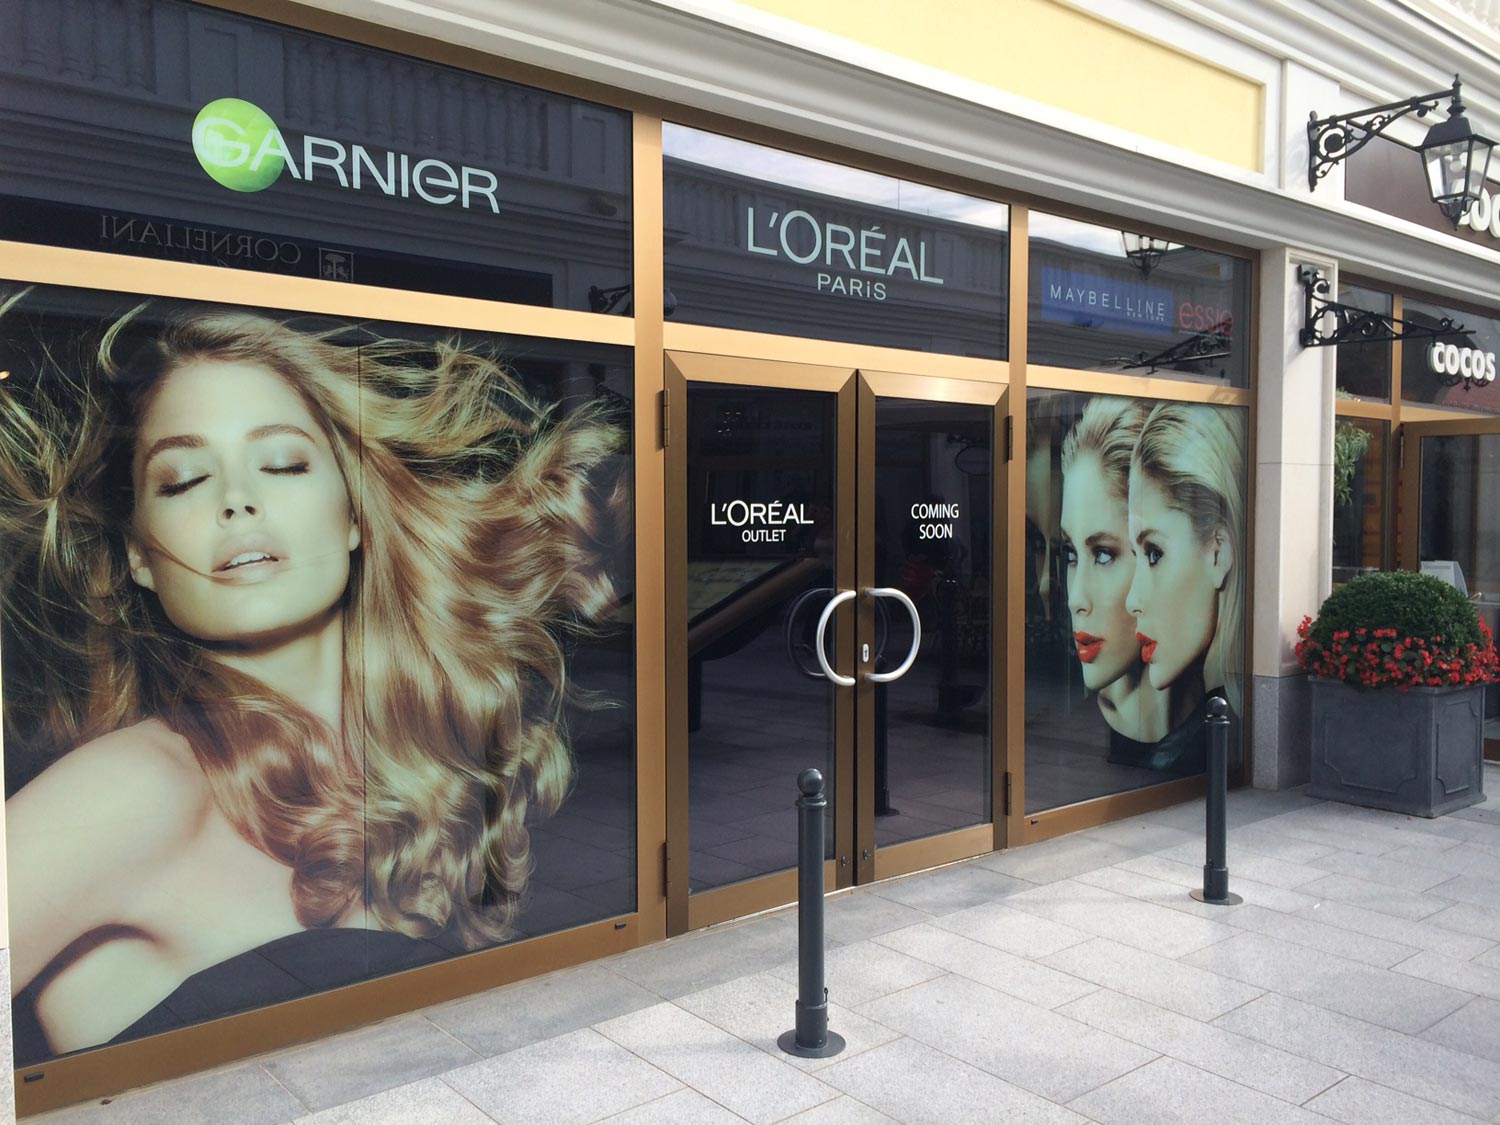 Designer Outlet Parndorf otvoril prvú a jedinú podnikovú predajňu L’Oréal v Rakúsku. Milovníkom nákupov v outletovom mestečku Parndorf ponúkne výhodné nákupy so zľavou.